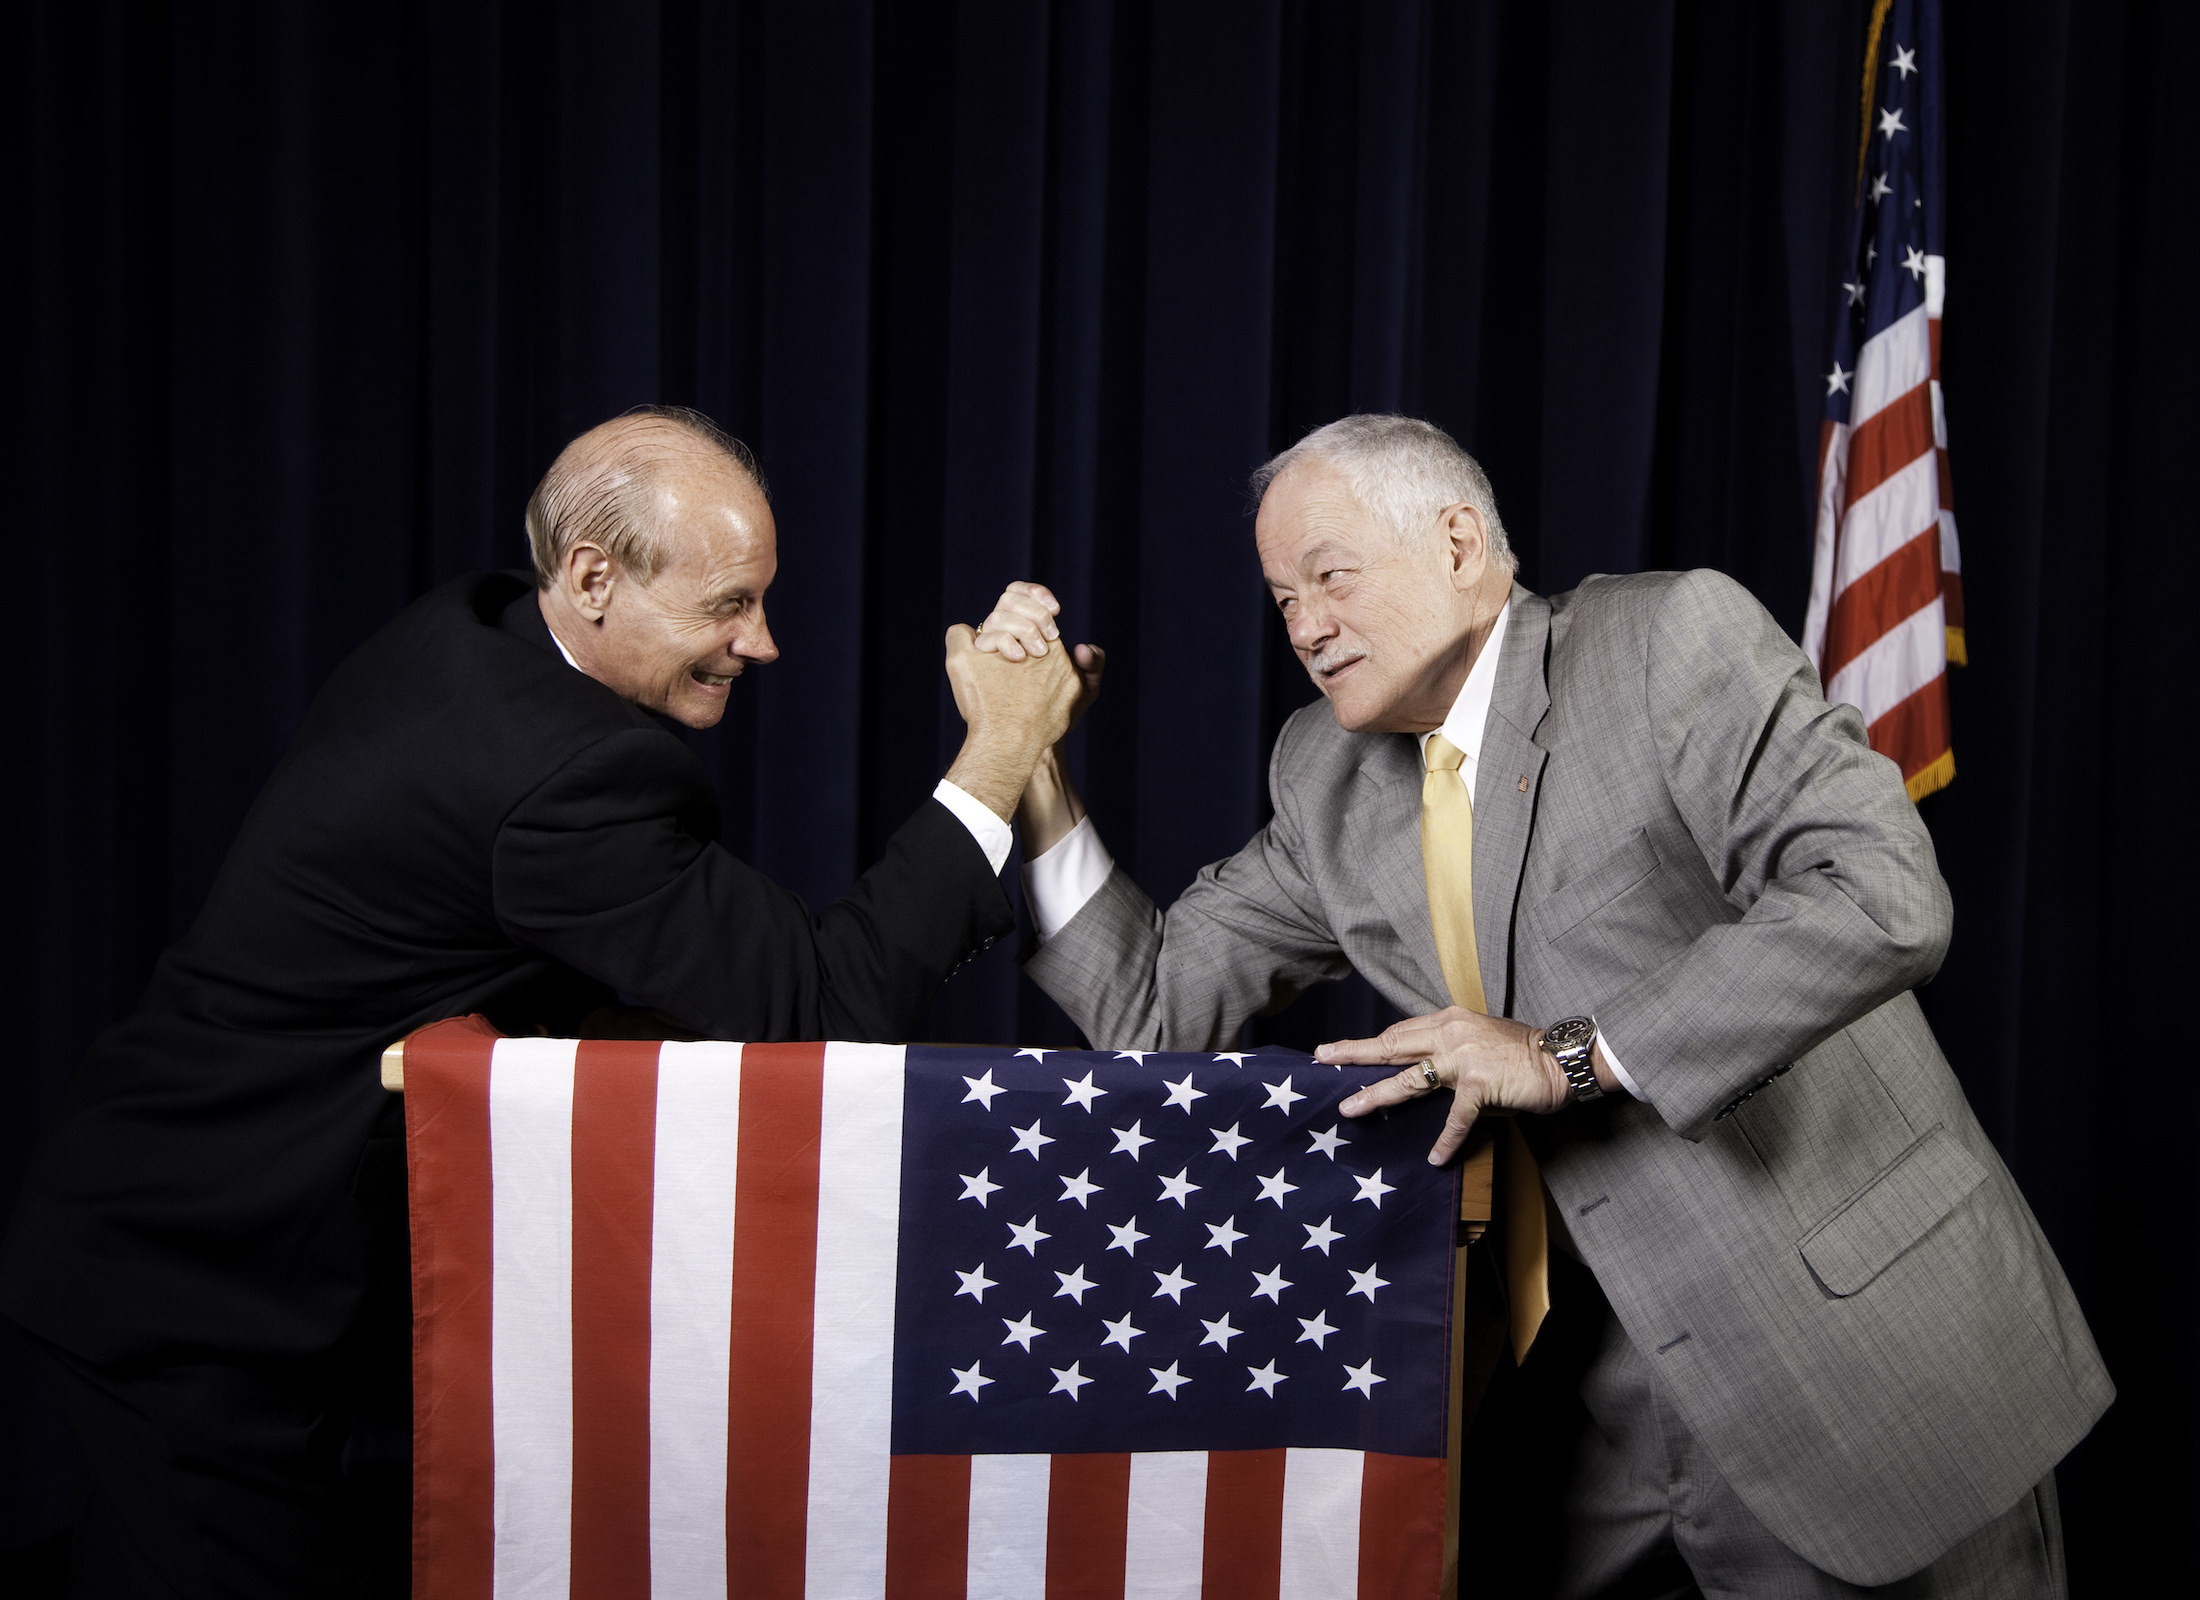 Two men wrestling above a US flag